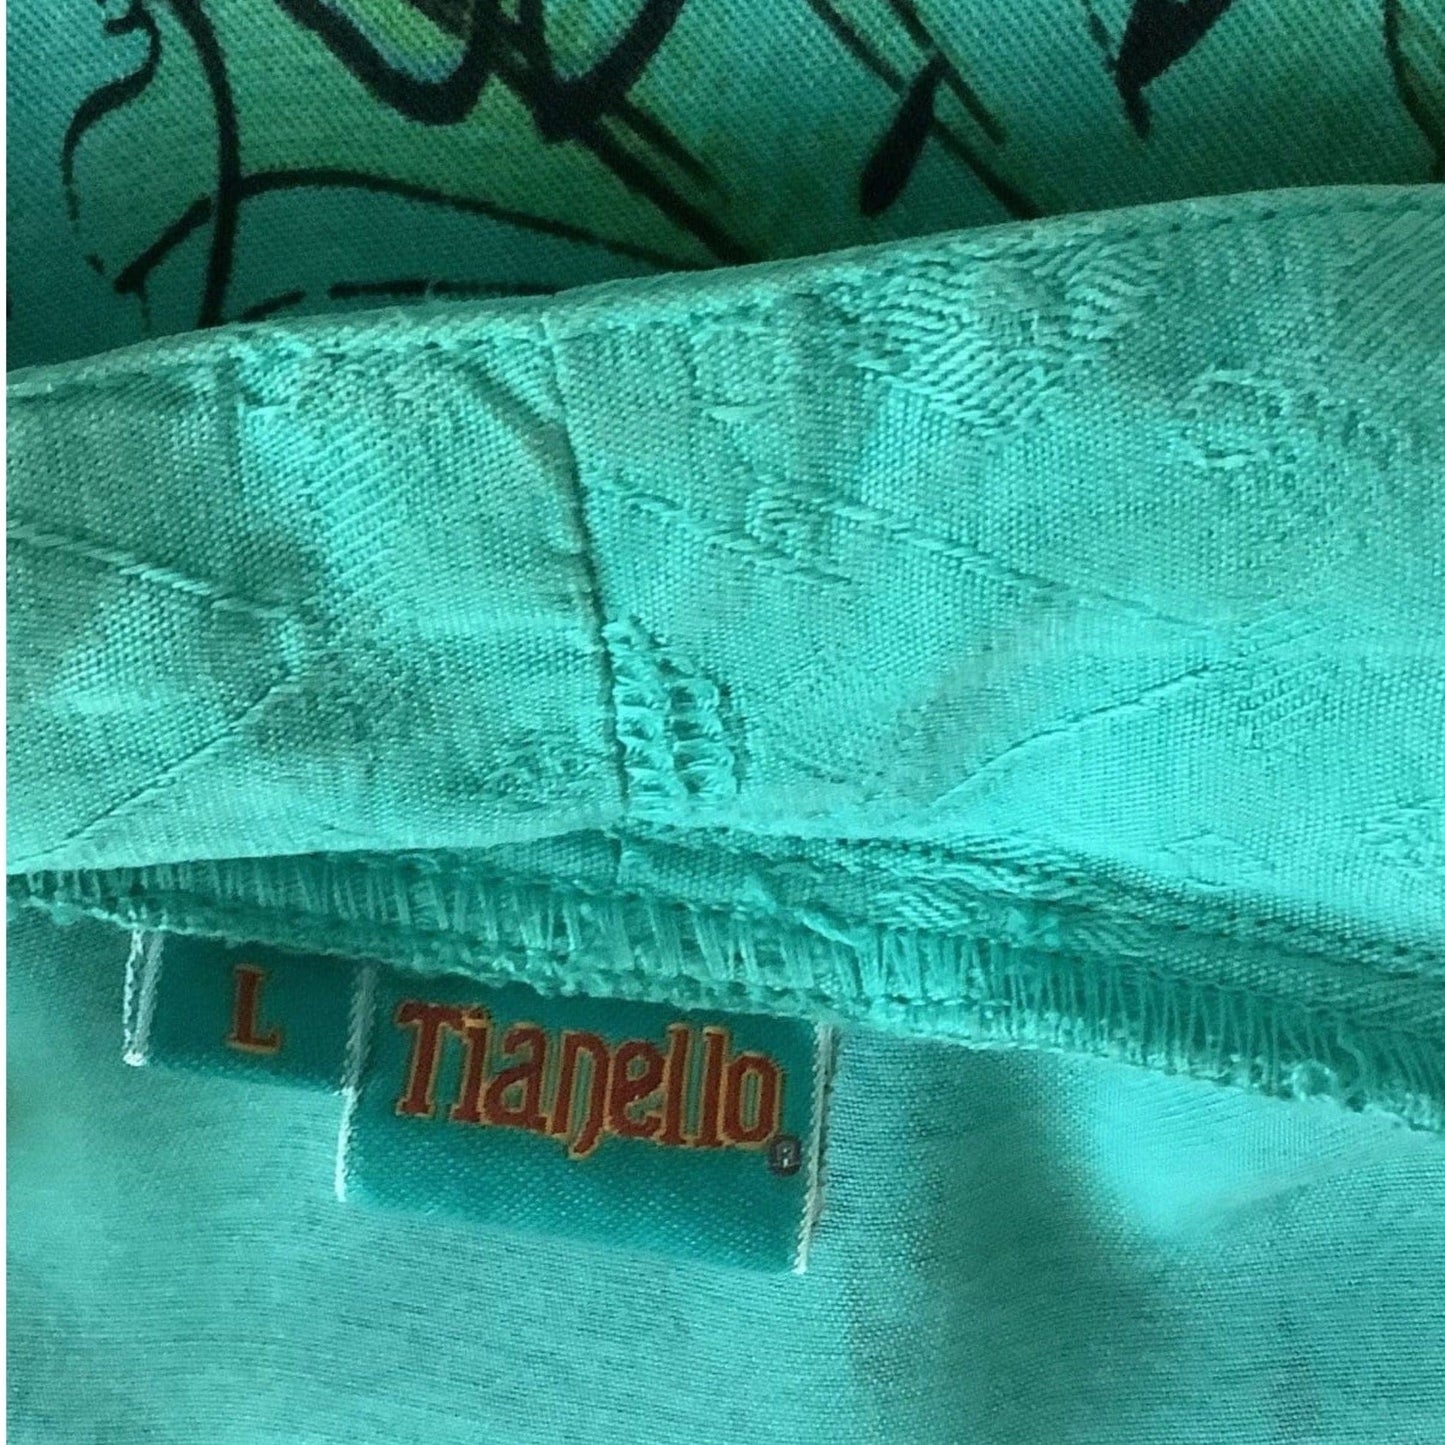 Tianello Kimono Blazer Large / Blue / Vintage 1990s